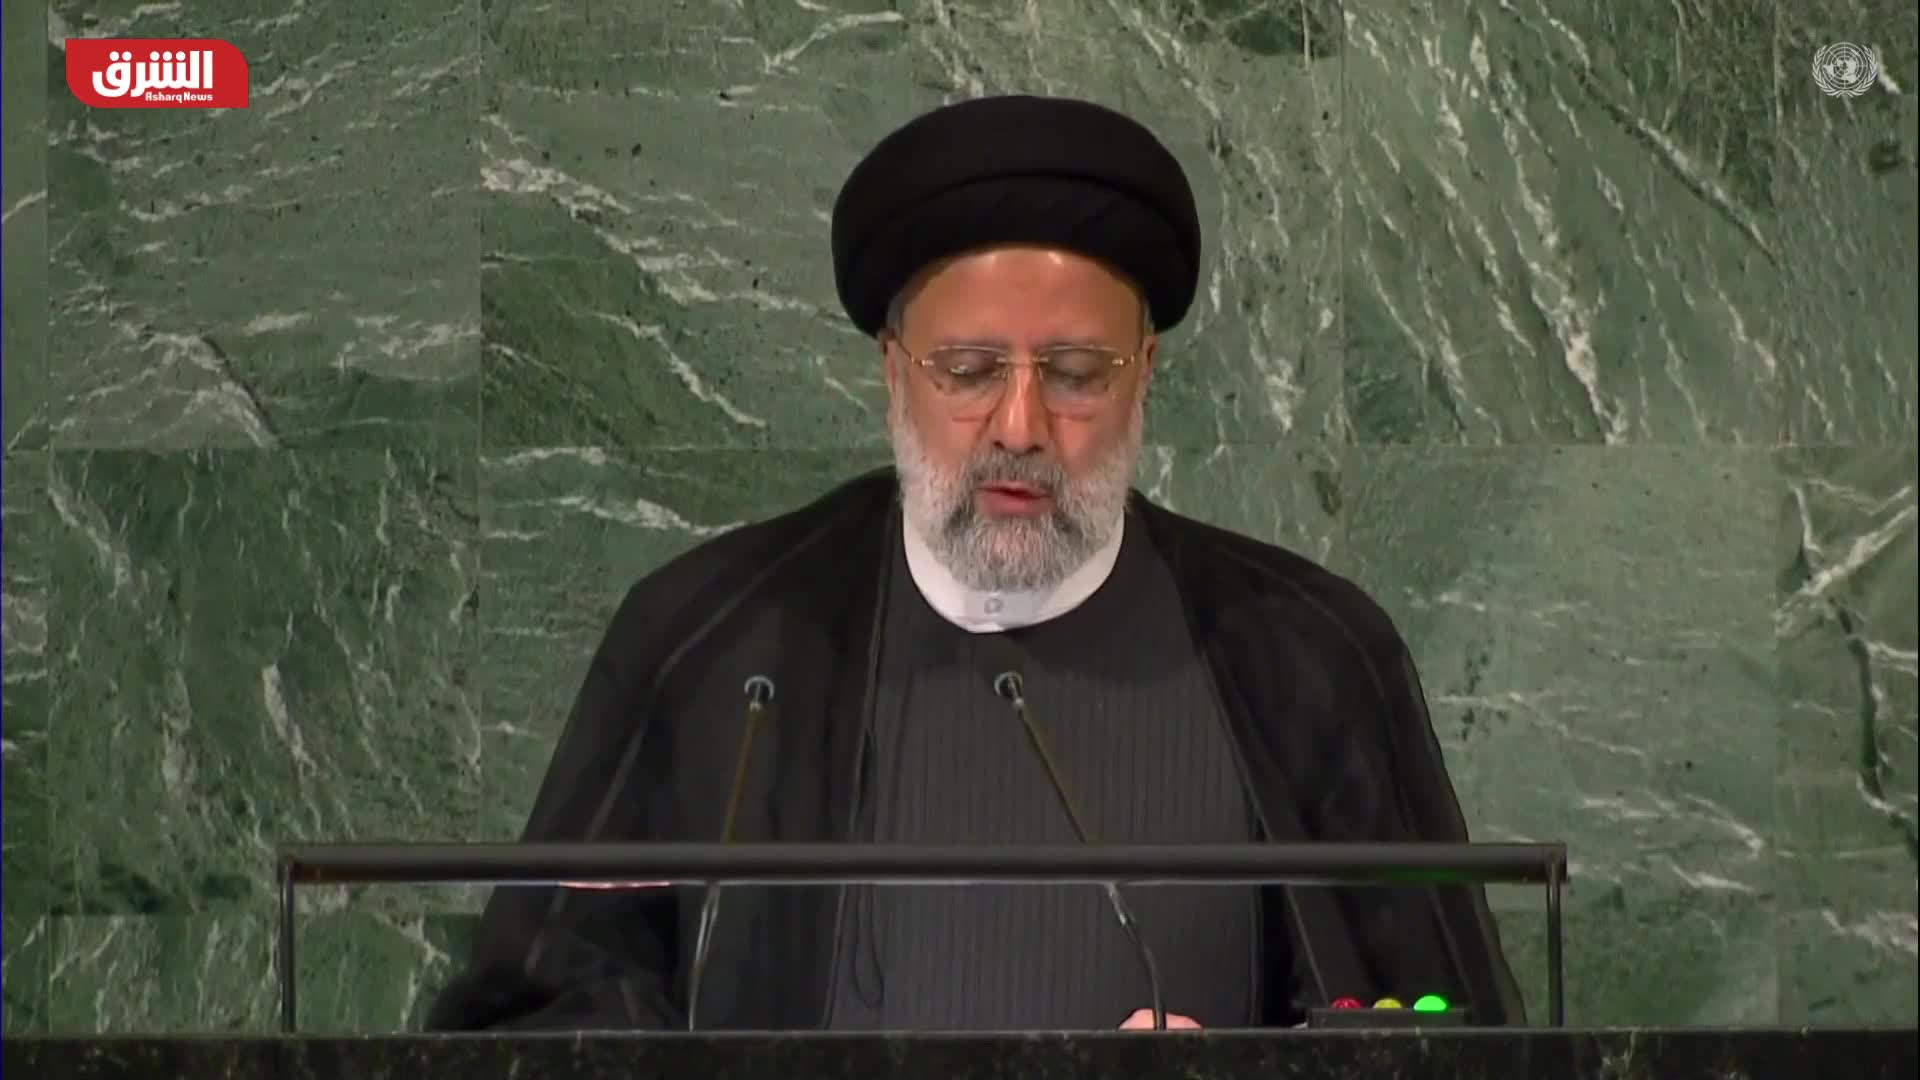 رئيسي: أعلن من هنا أنّ إيران لا تنوي تصنيع السلاح النووي ولا تفكر فيه